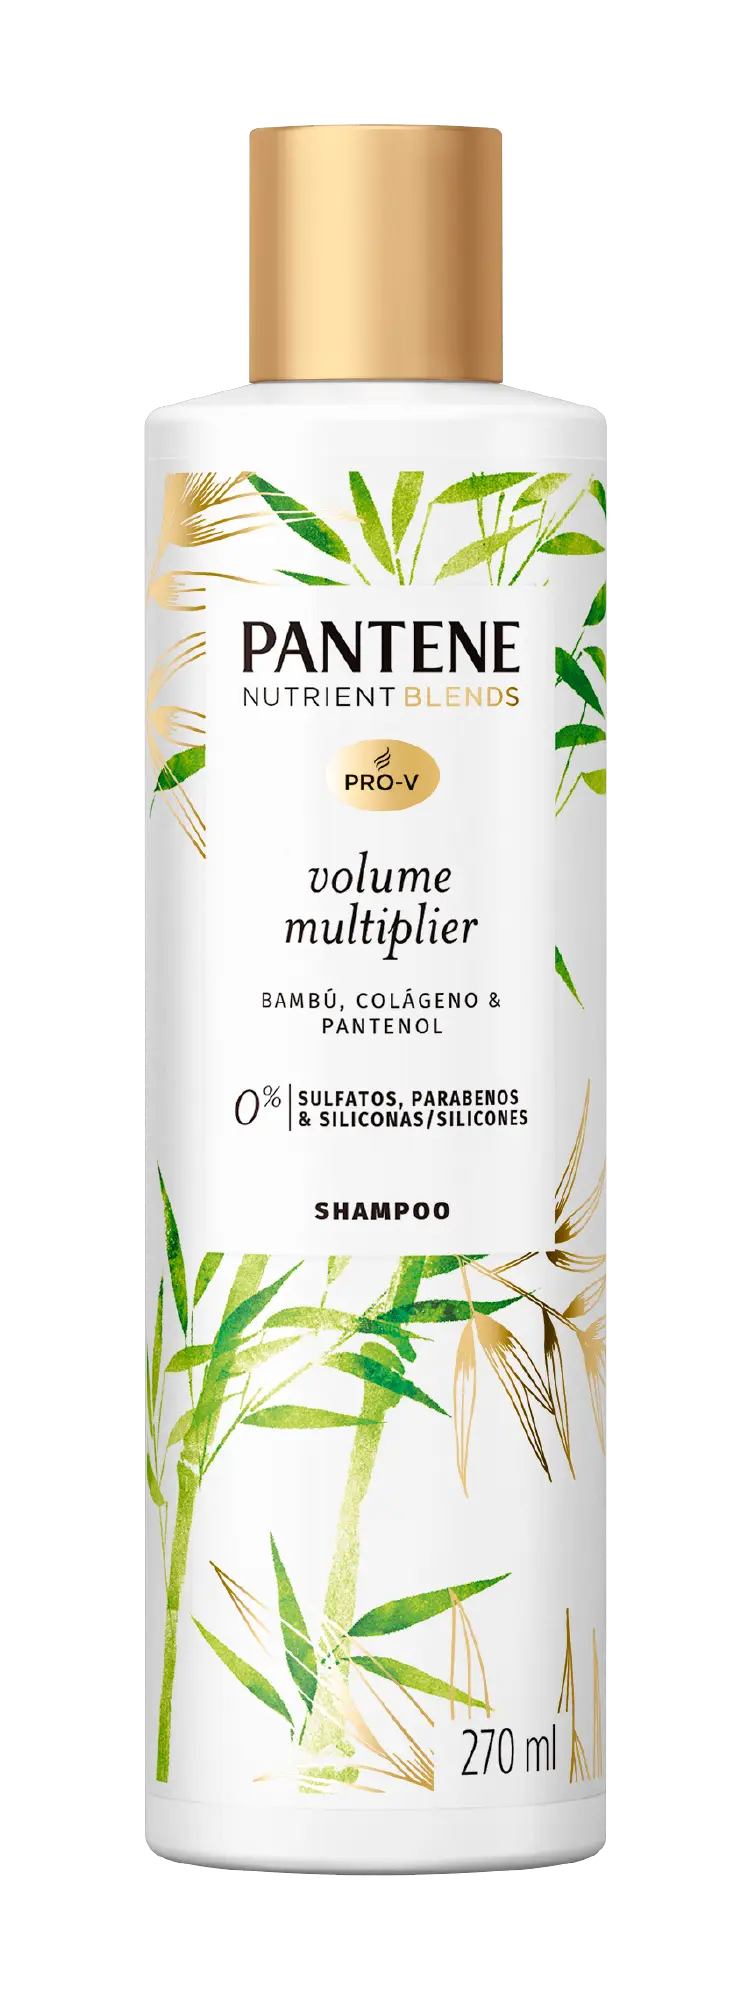 Shampoo Pantene com bambu, colágeno e pantenol, sem sulfatos, sem parabenos e sem silicones.